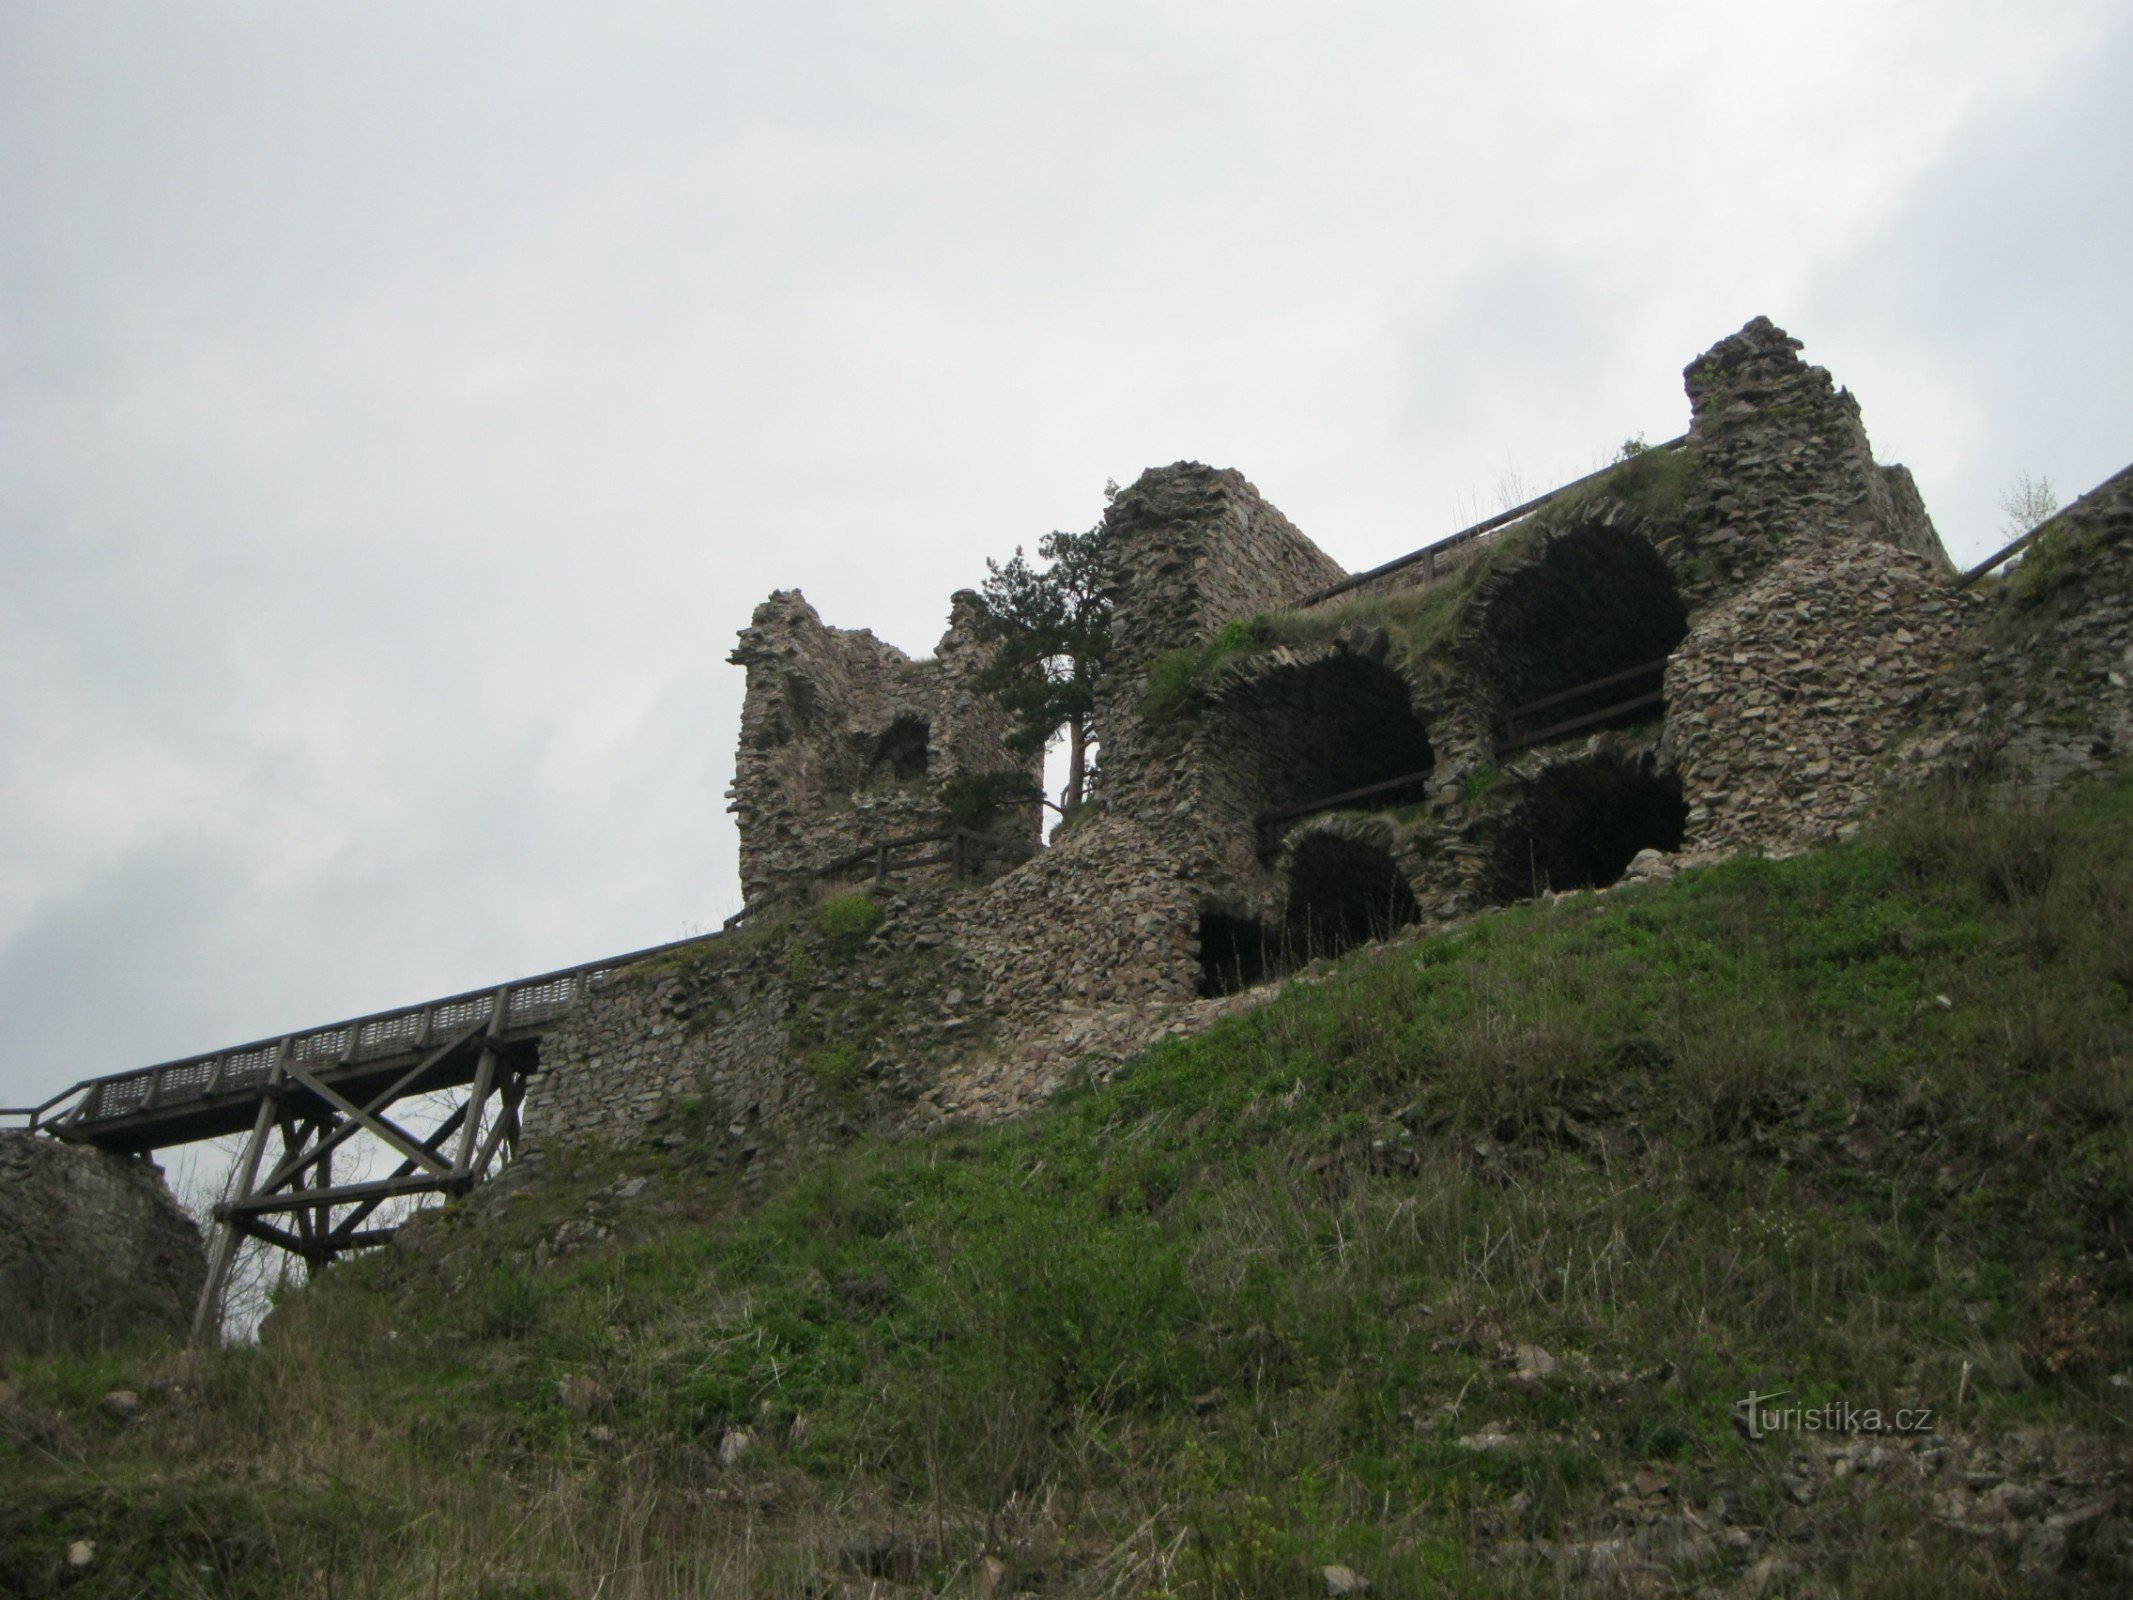 Après les châteaux autour de Vír